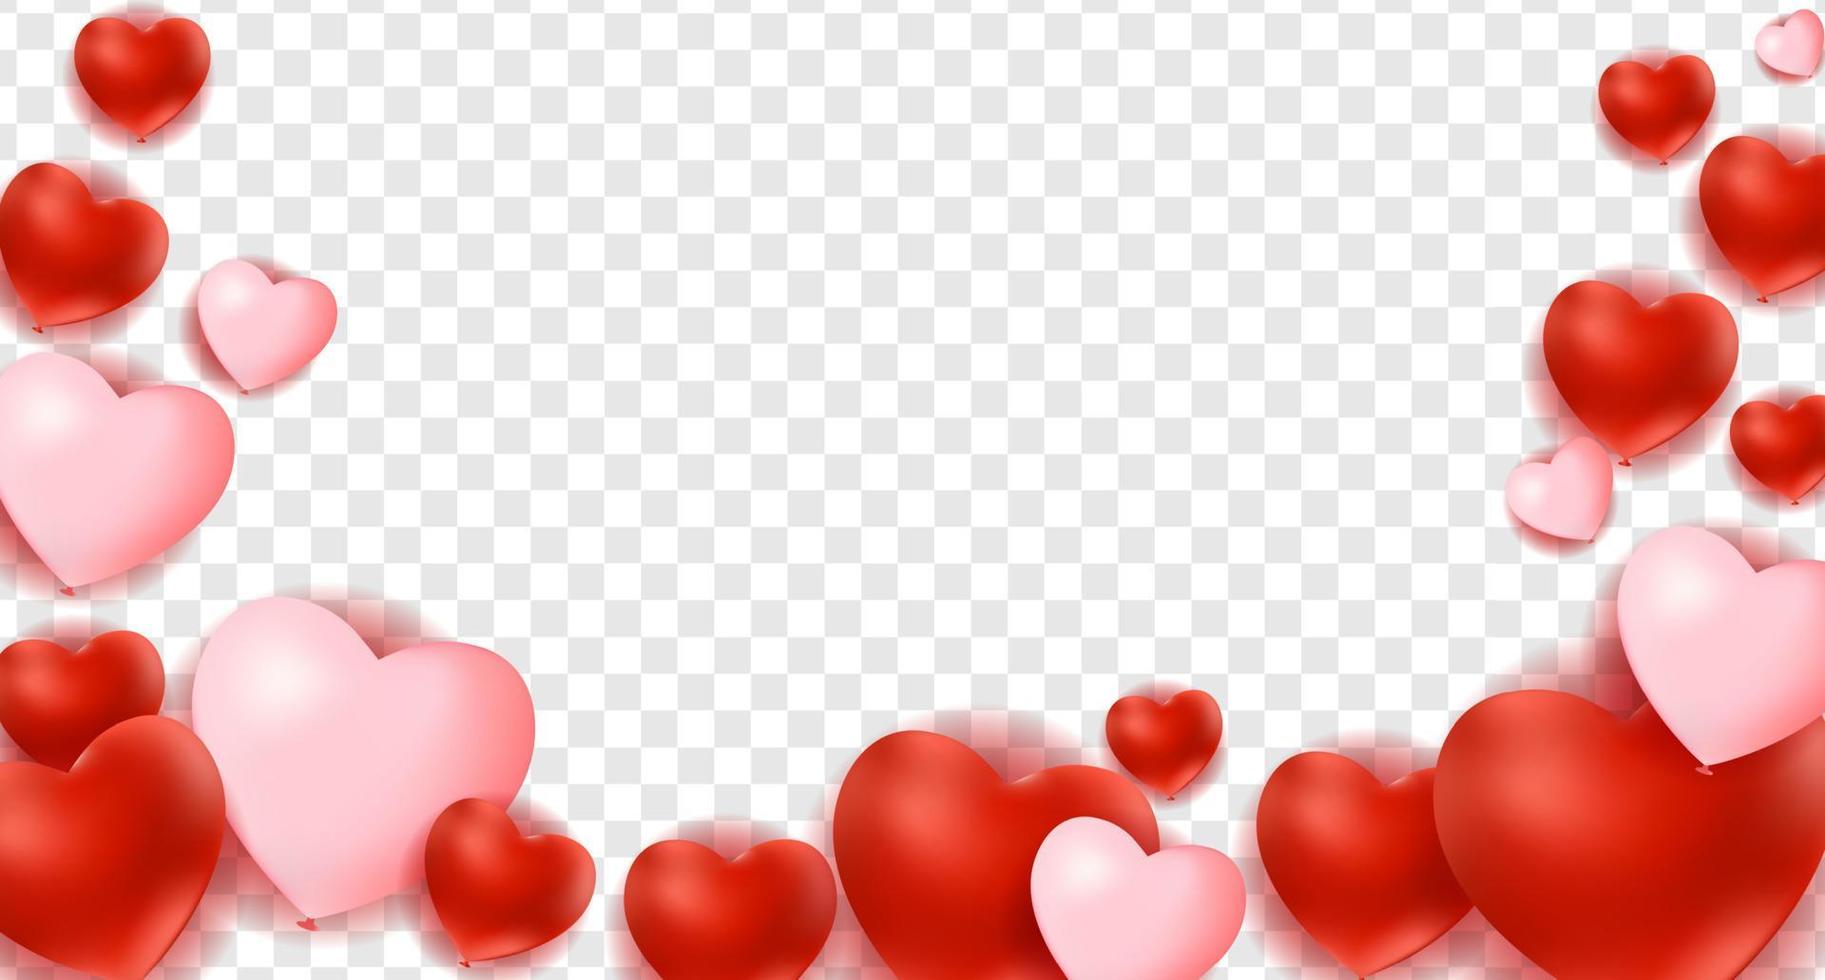 Fondo de corazones, decoraciones para el día de San Valentín. vector